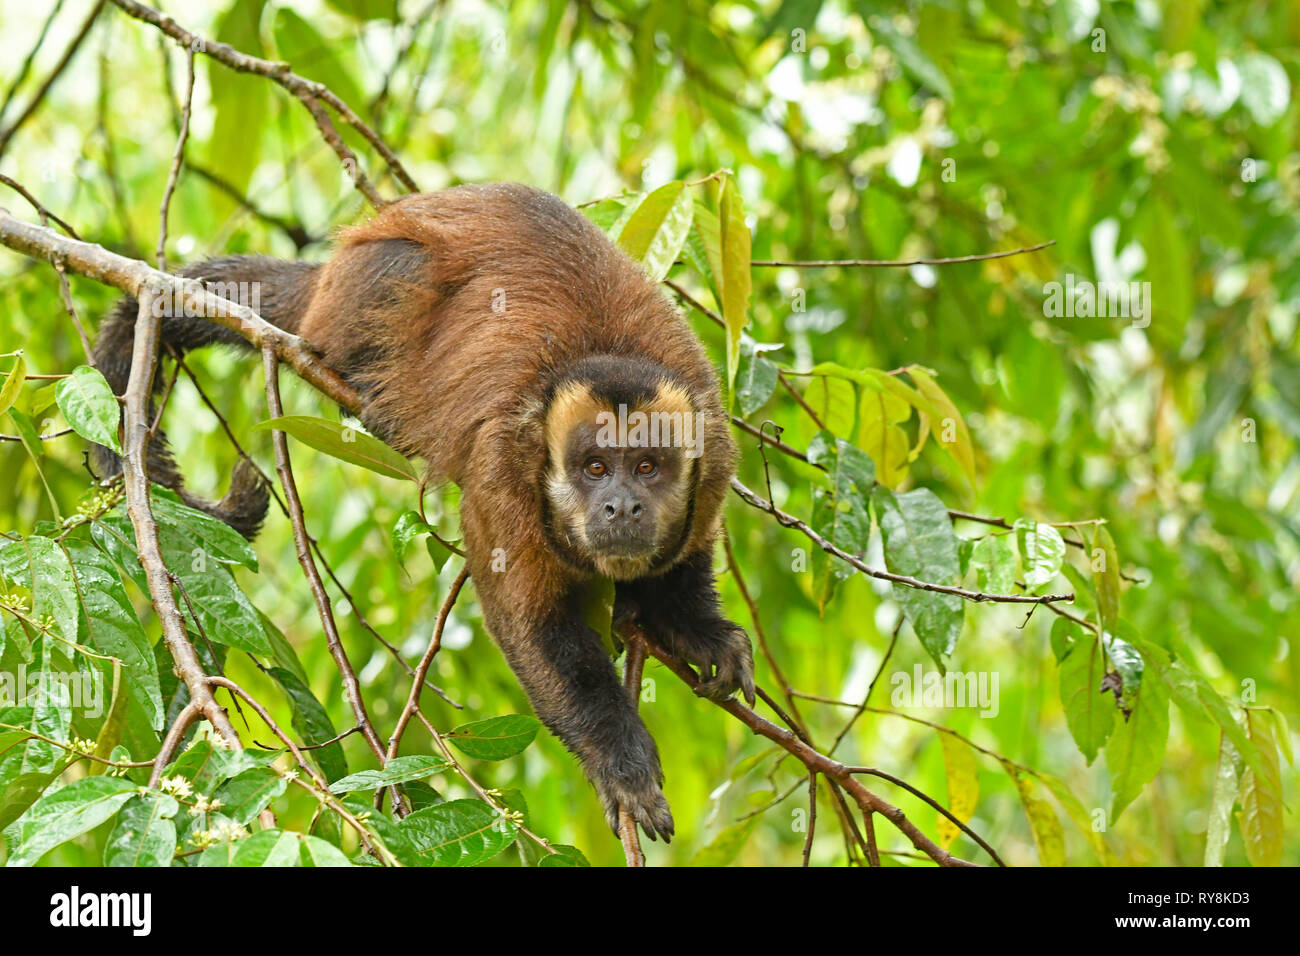 Singe Capucin brun (apella cebus) mâle adulte sur branch, Manu Cloudforest, Pérou, Novembre Banque D'Images